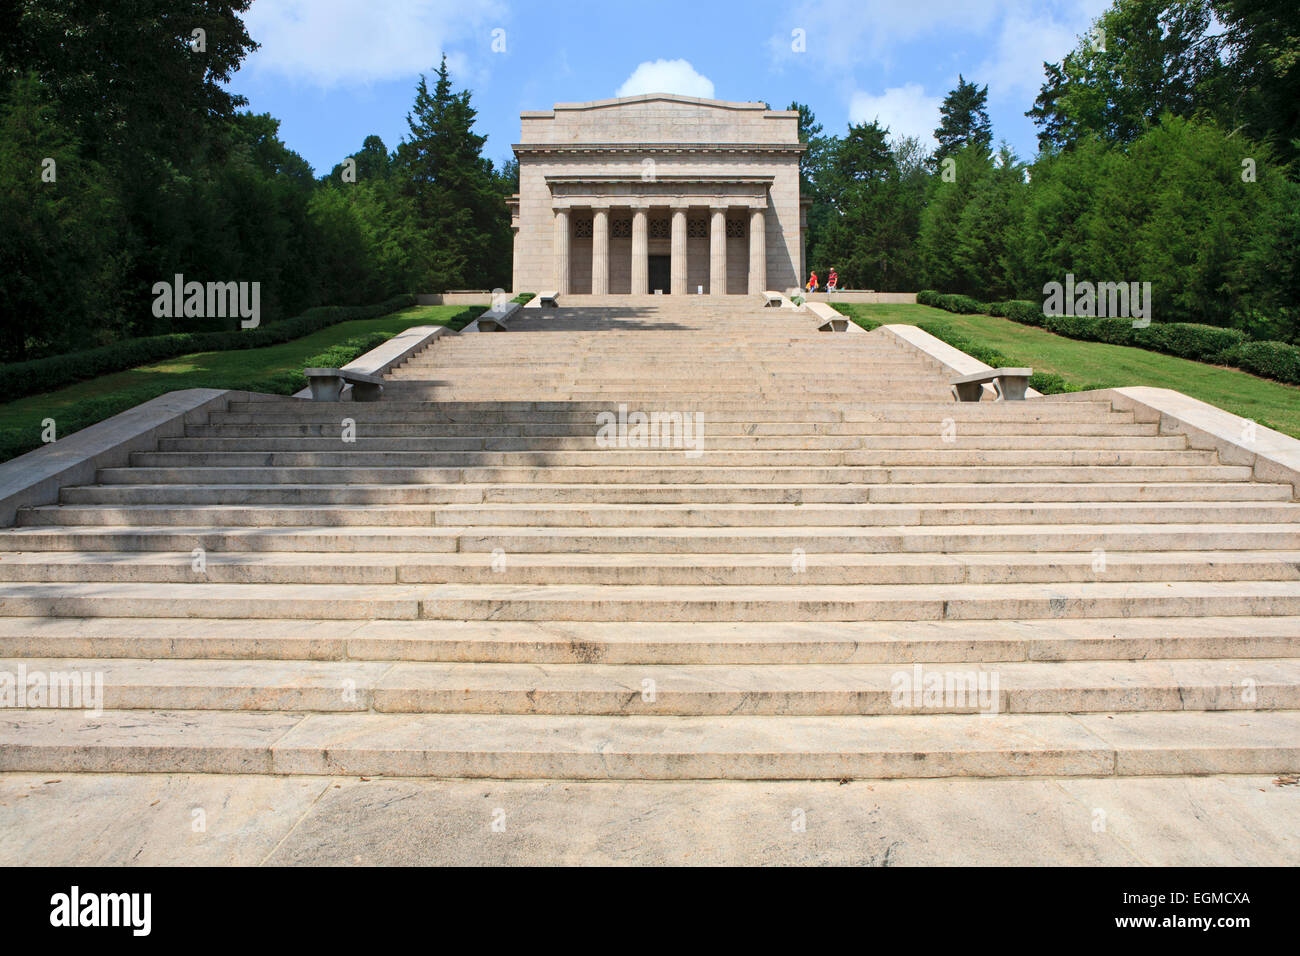 Campo e riproduzione del Lincoln Memorial a Abraham Lincoln Birthplace National Historical Park in Kentucky. Foto Stock